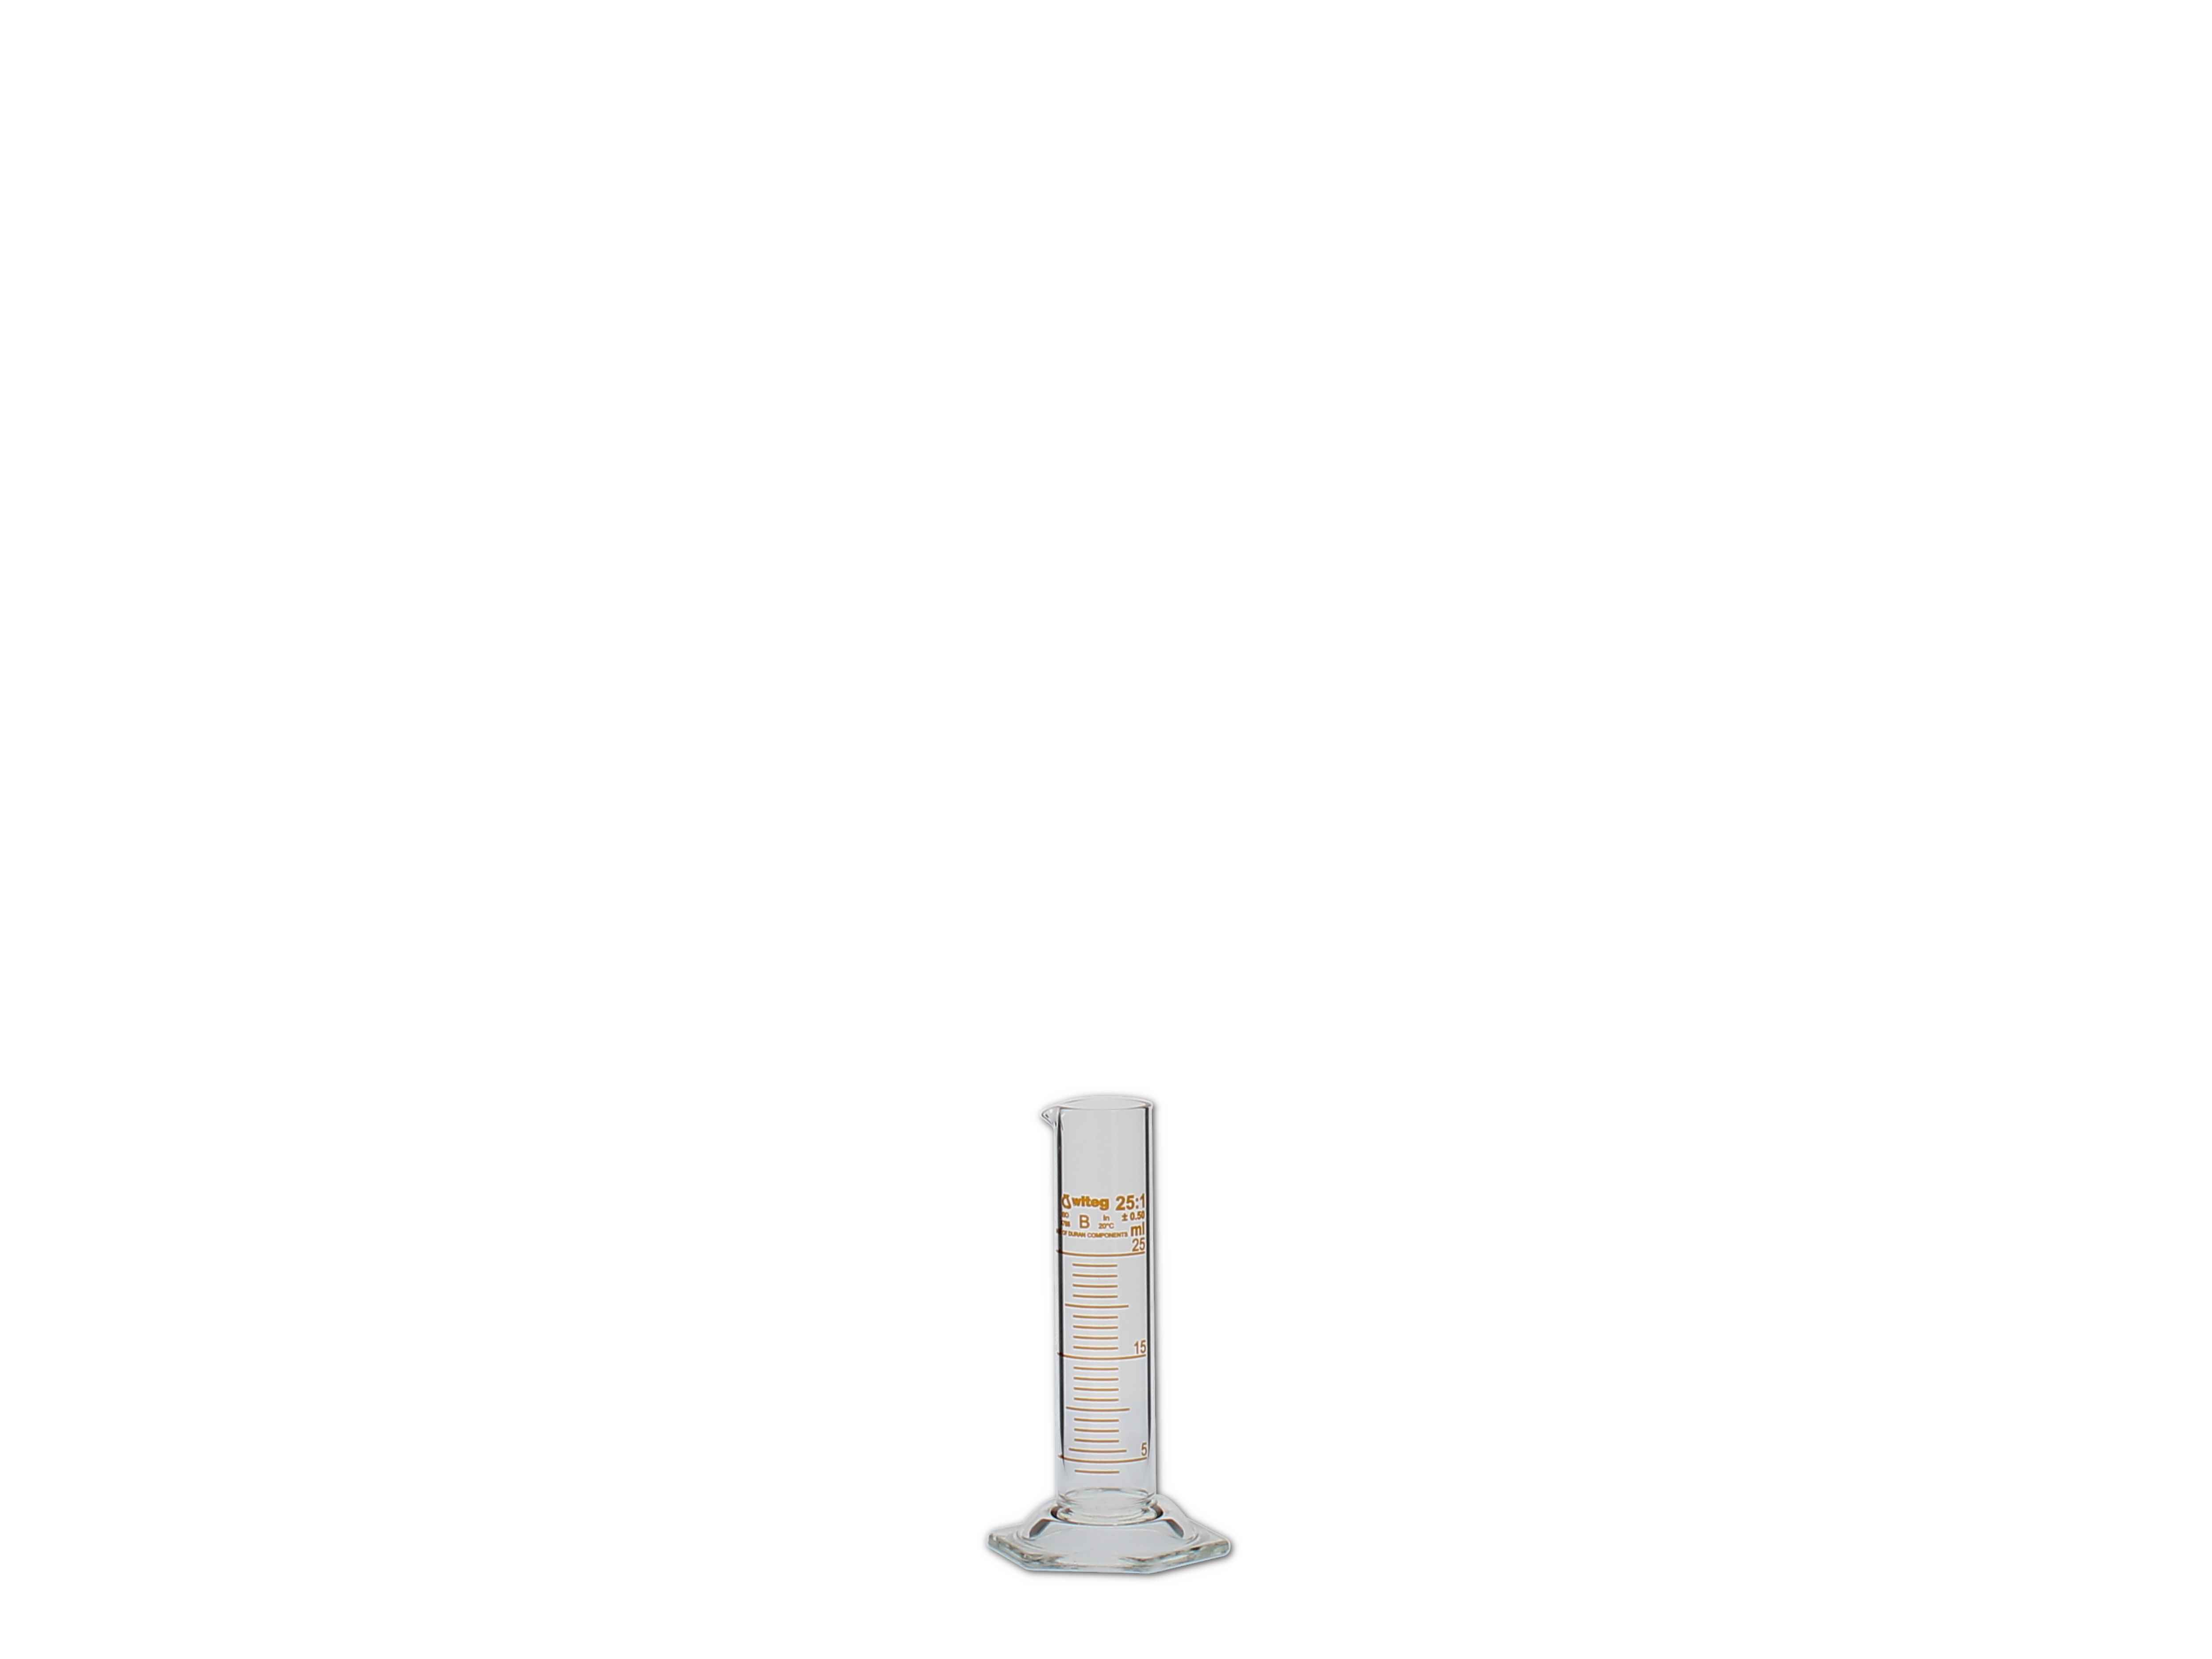    Messzylinder, Glas, graduiert - 25ml (niedere Form)